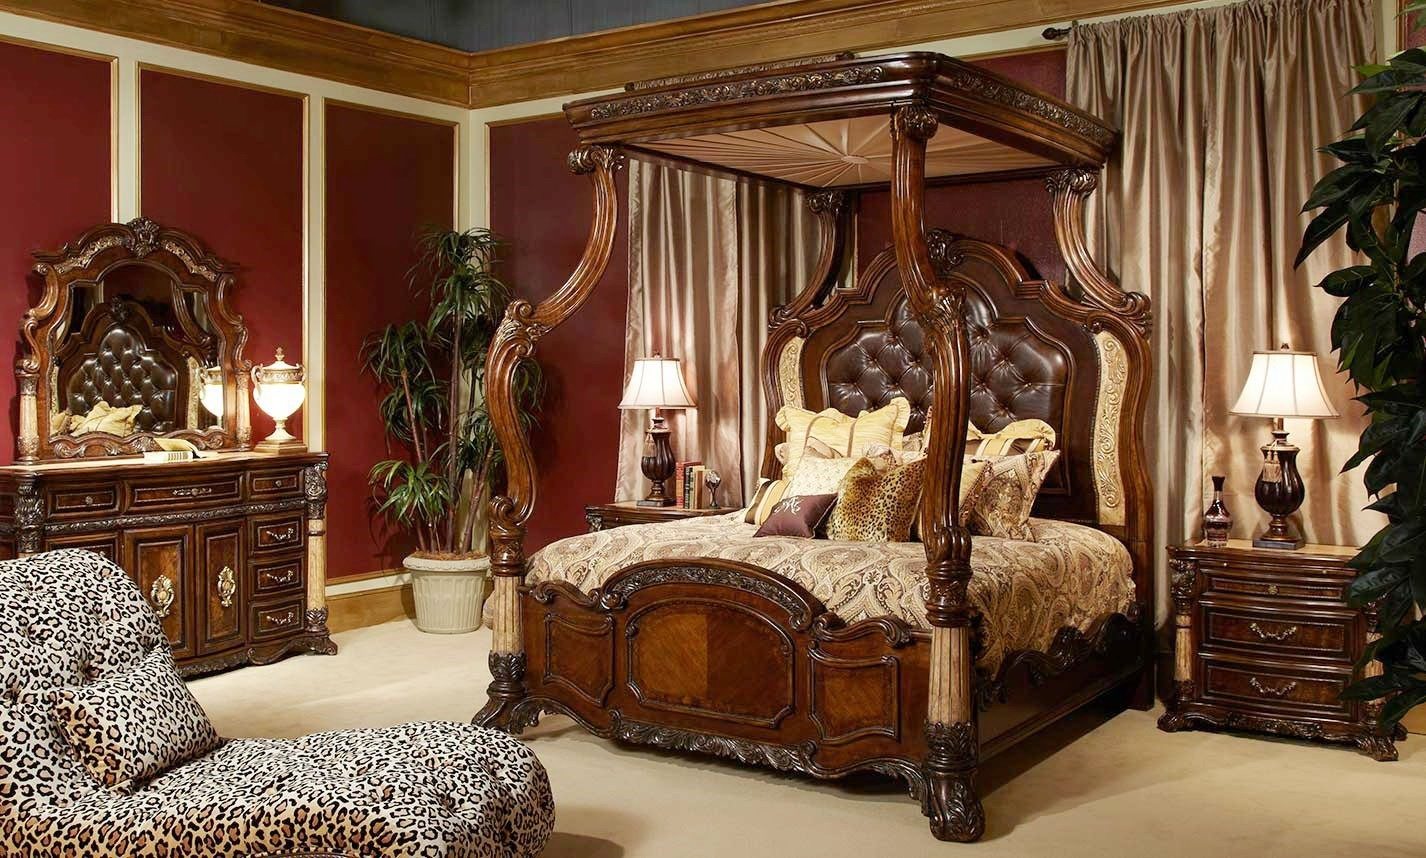 غرفة نوم الملكة فيكتوريا تعتبر من قطع الأساس المصممة بشكل معقد مع أرضية بيضاء وسرير ملكي من الخشب المزخرف